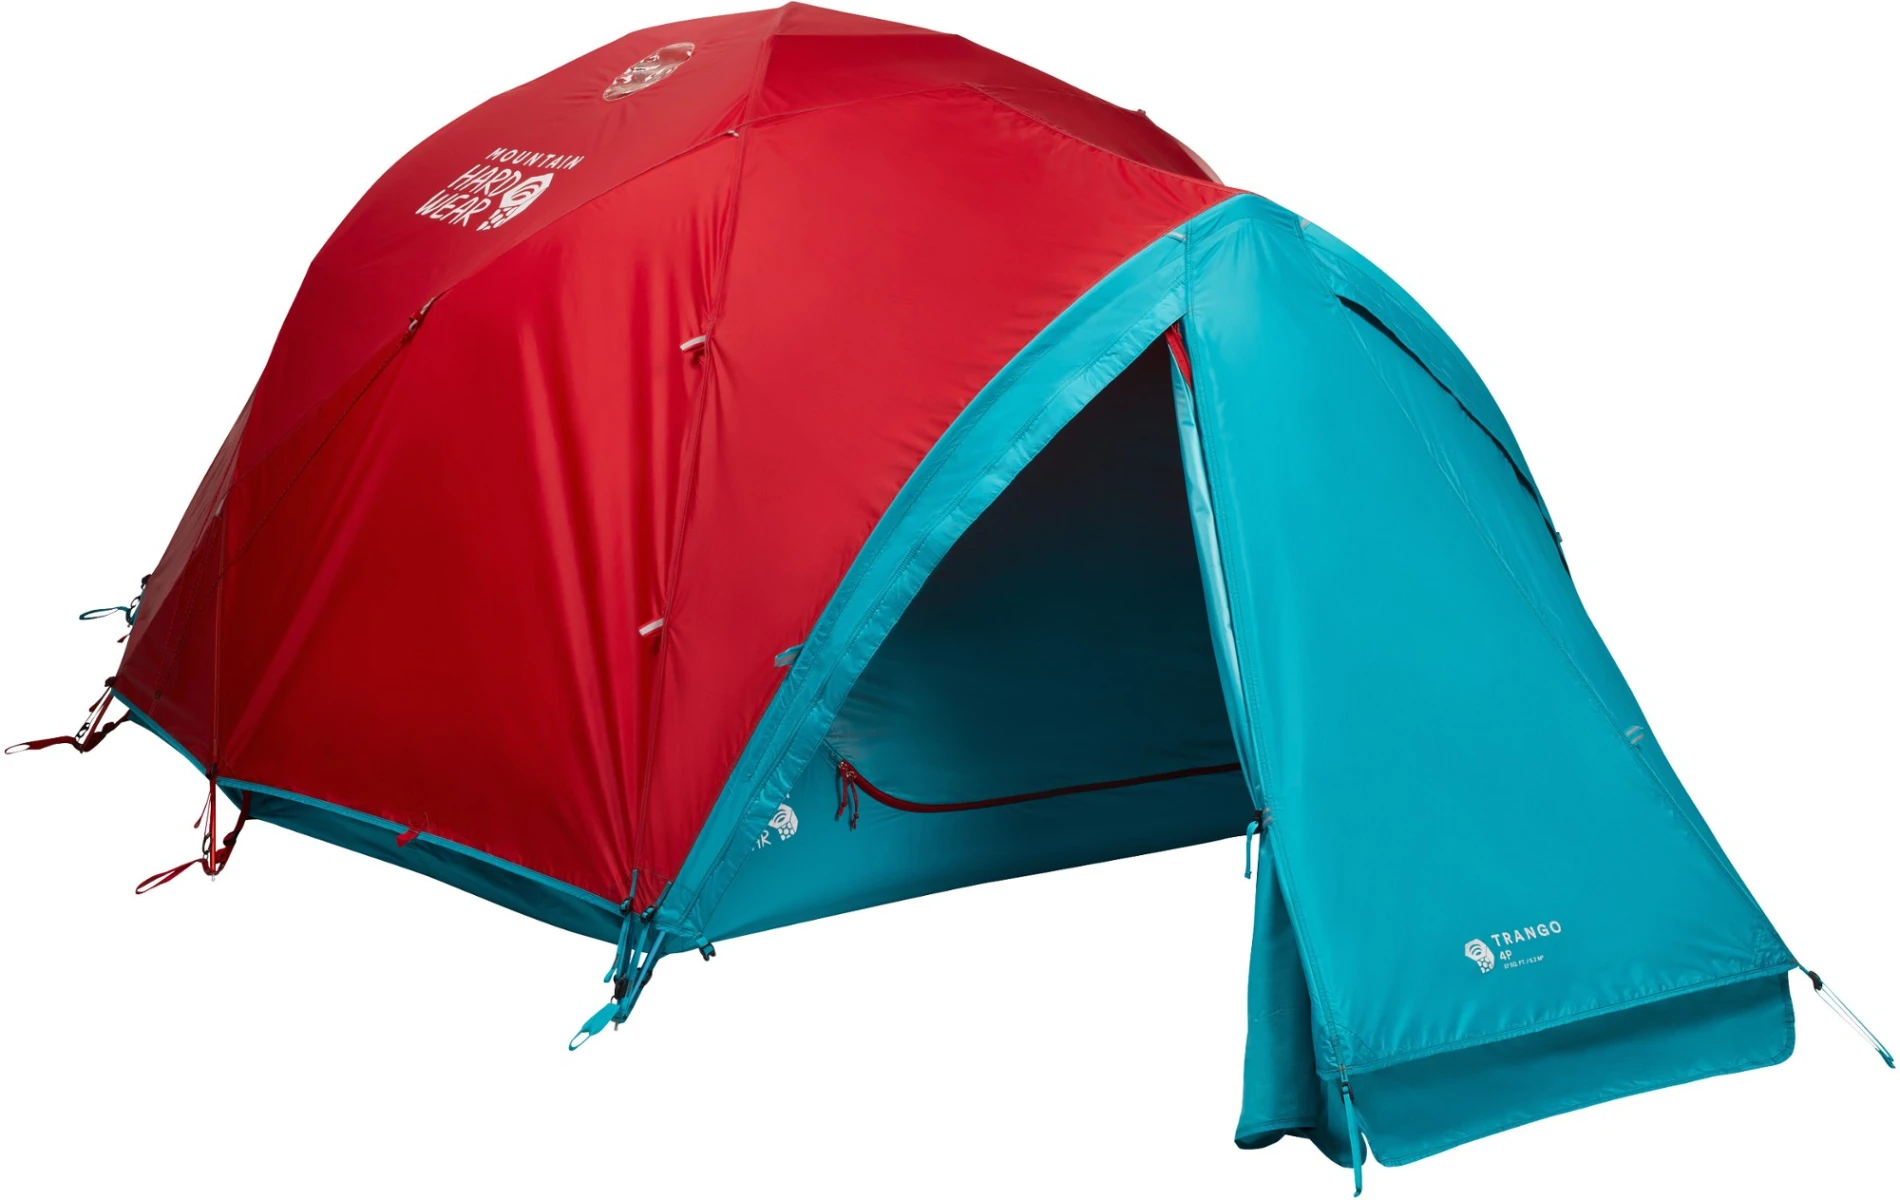 Mountain Hardware Trango 4 tent